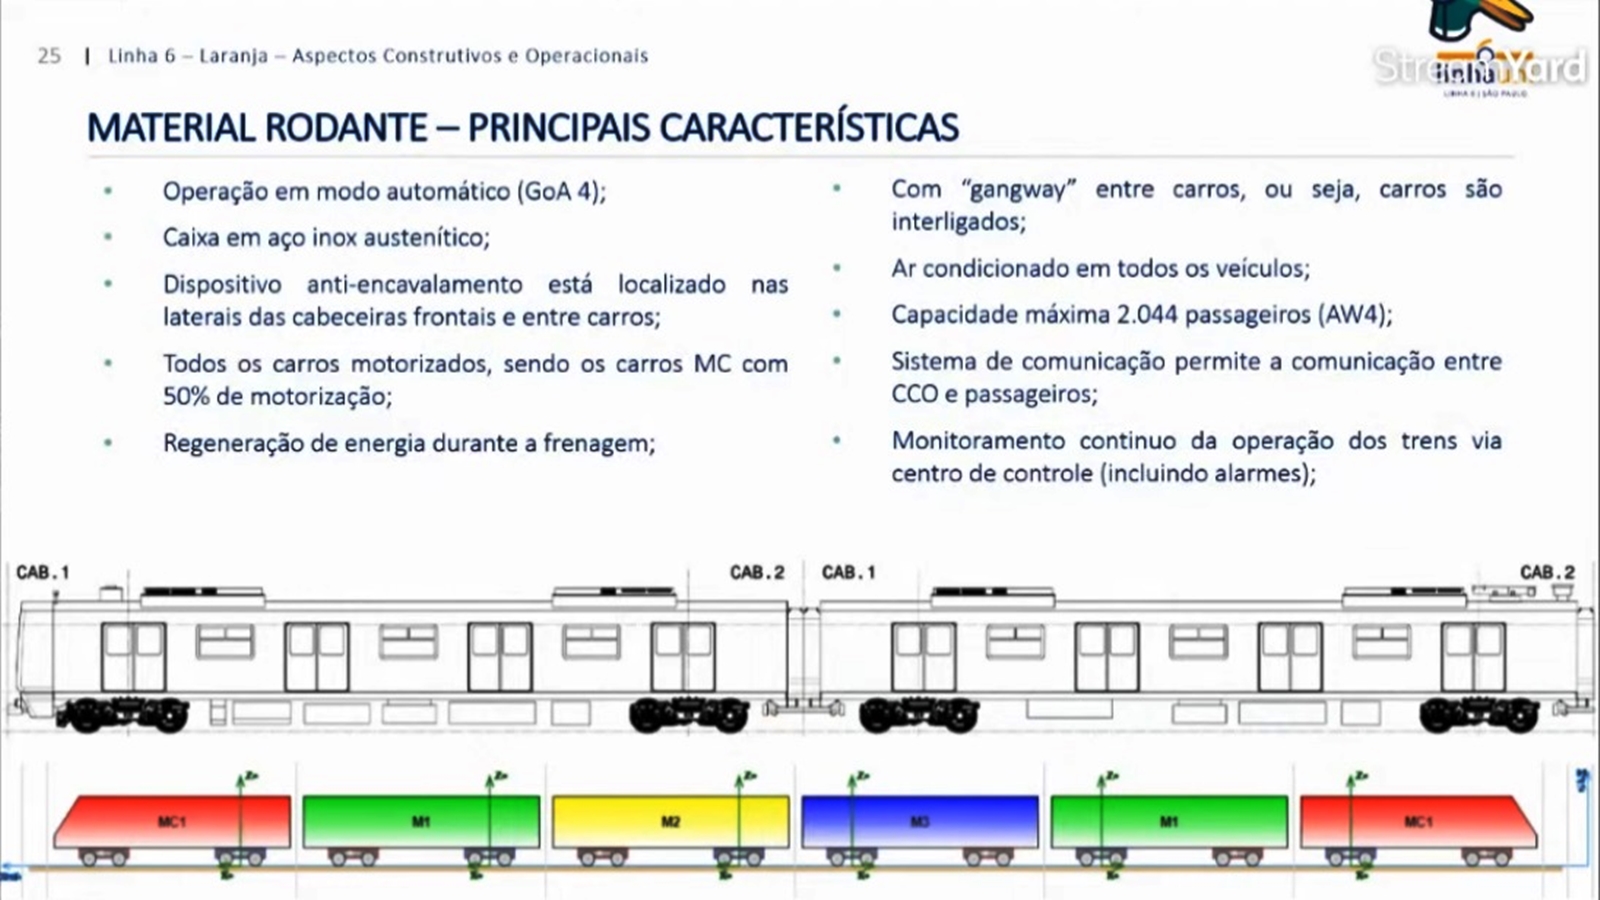 Características técnicas do novo trem (LinhaUni)